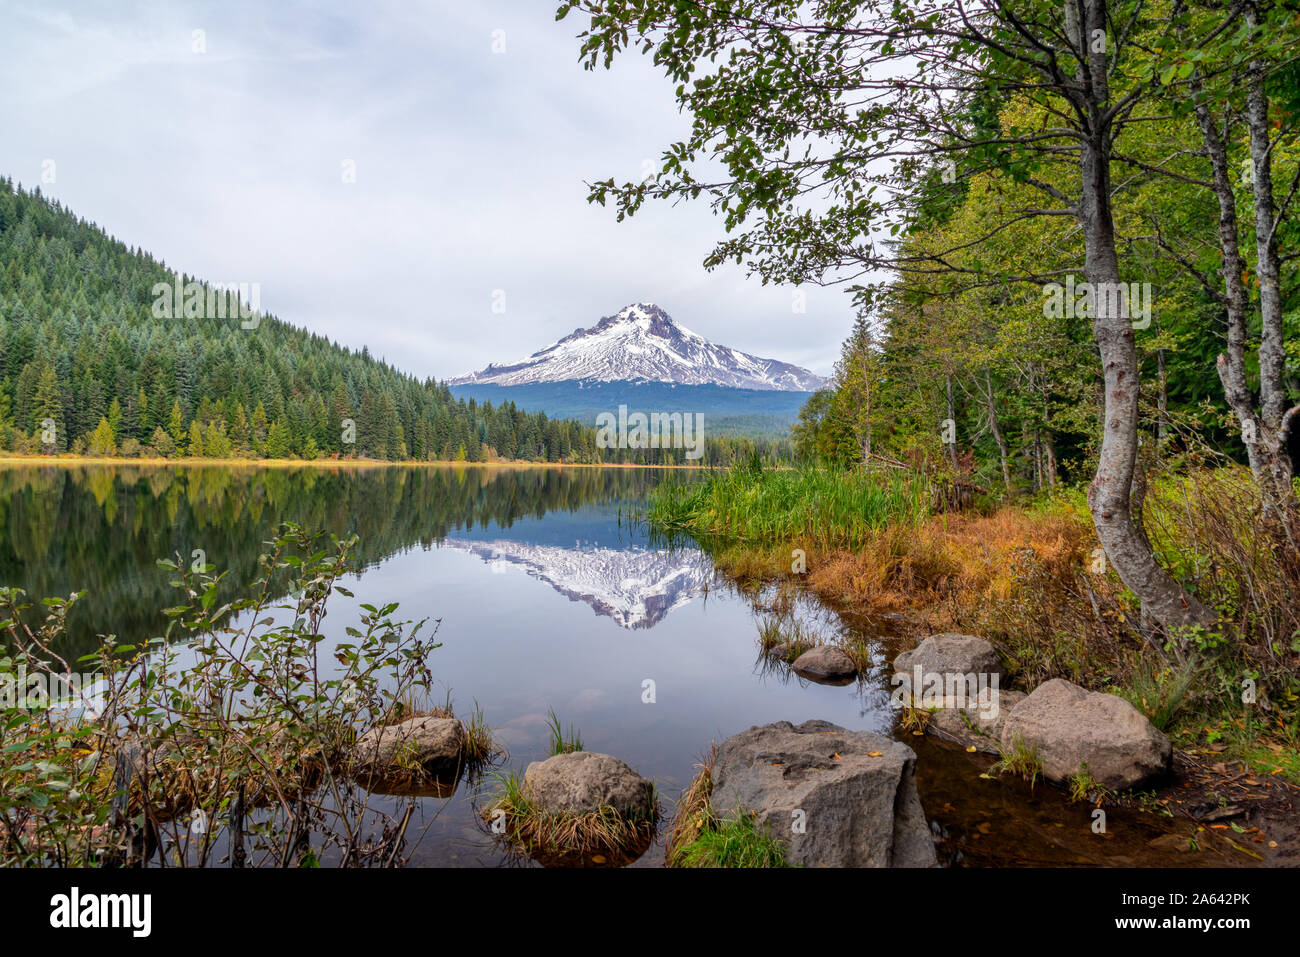 Mt. Il cofano riflettendo in Trillium Lago con rocce e alberi in un idilliaco paesaggio in Oregon, USA Foto Stock